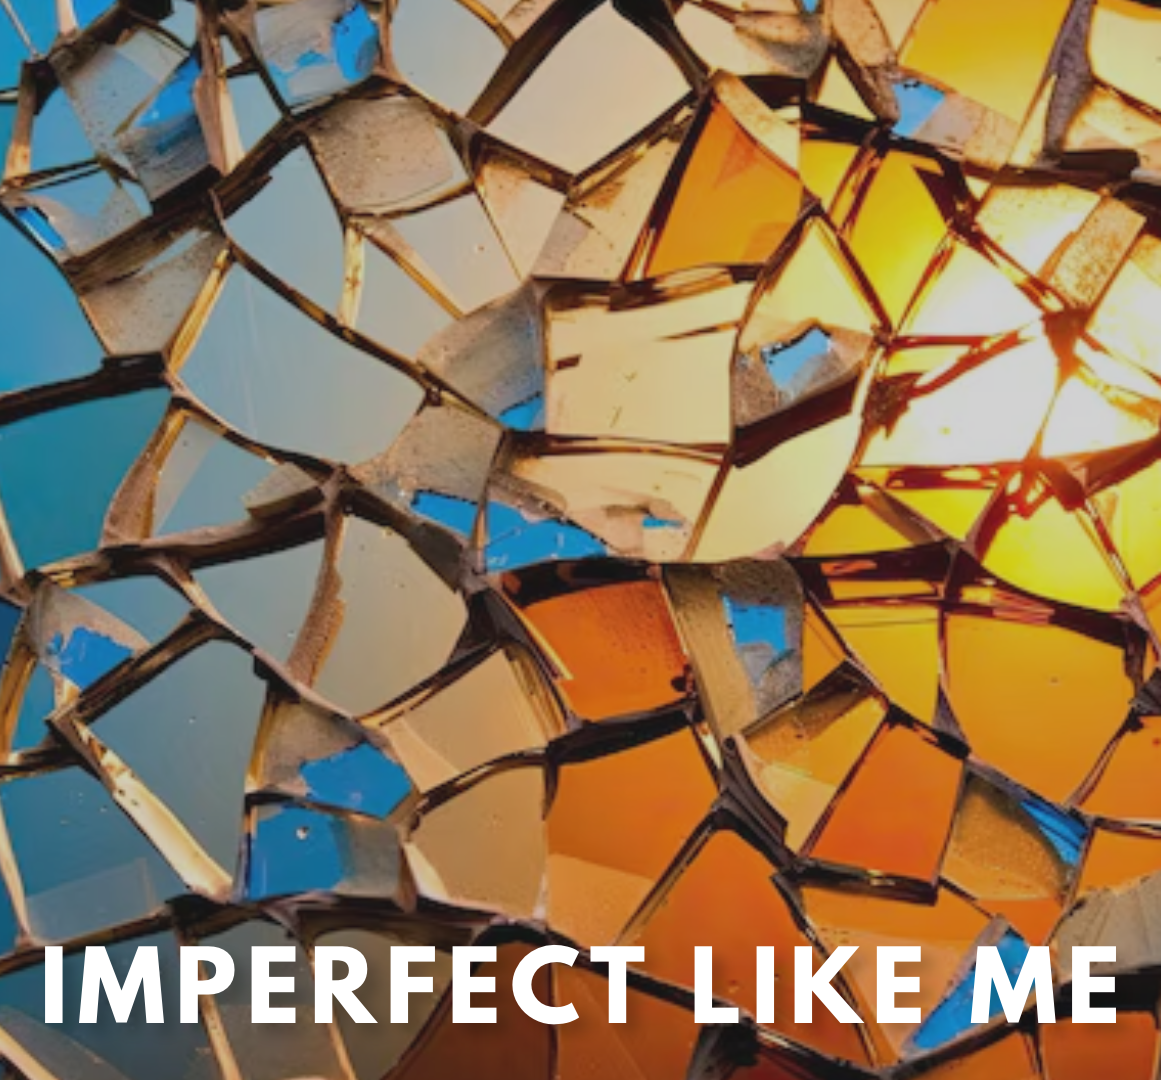 Ashley Beimford - "Imperfect Like Me"